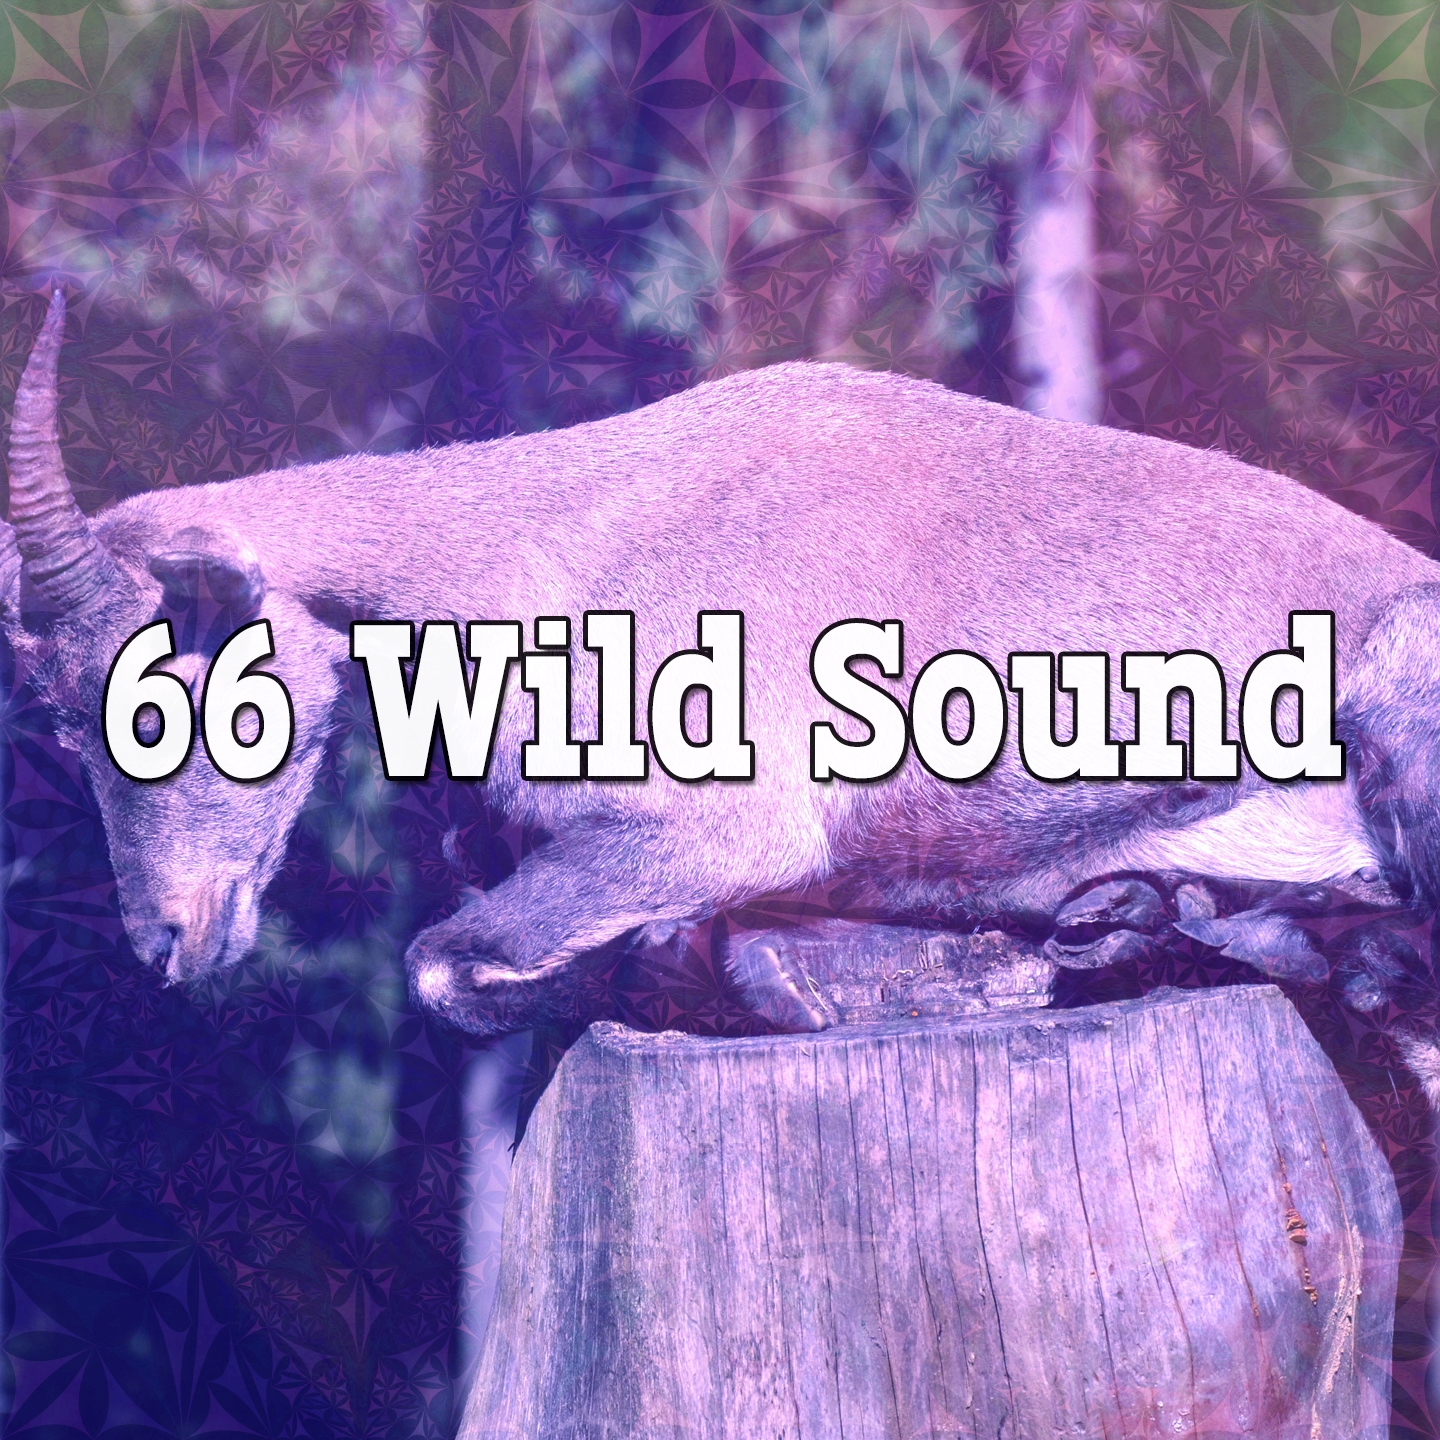 66 Wild Sound